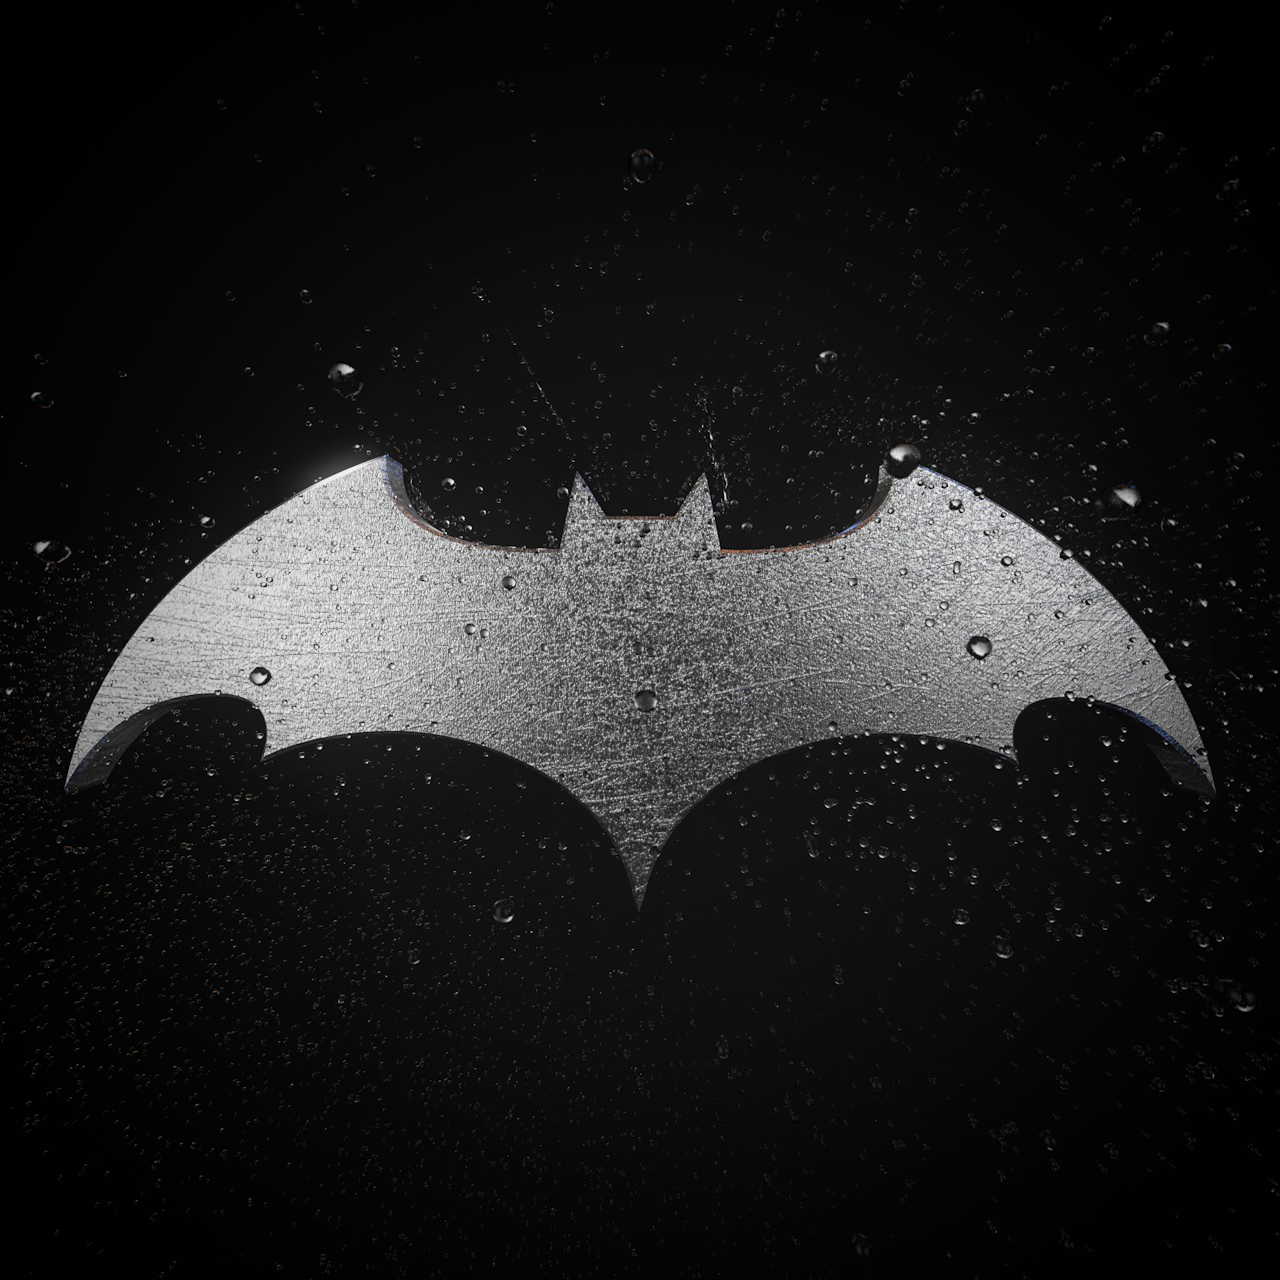 蝙蝠侠logo图片壁纸图片